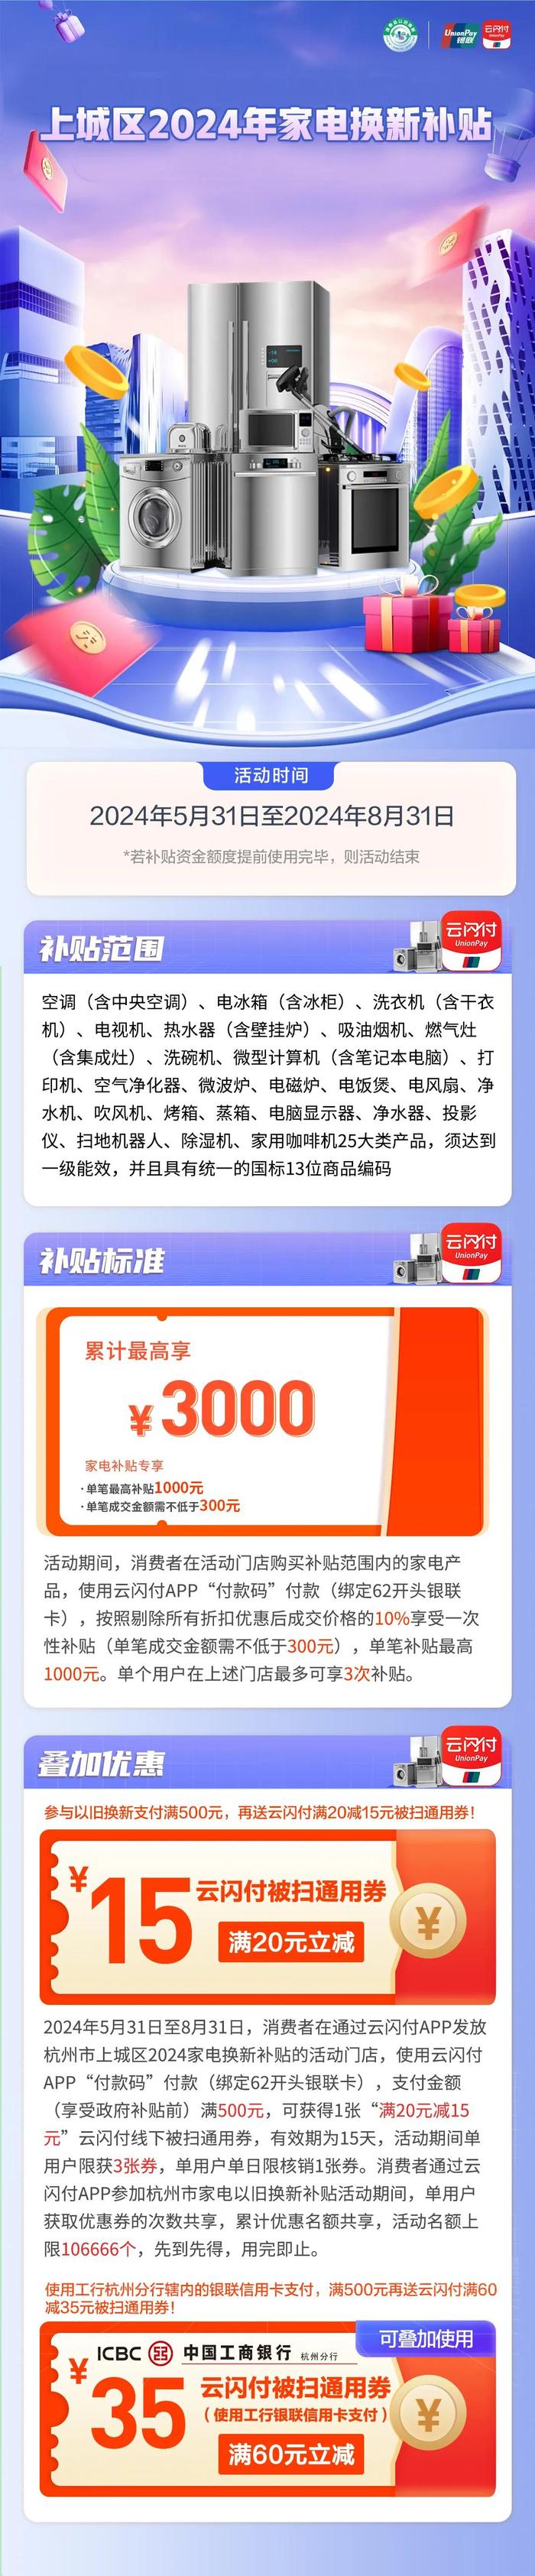 超5000万元!杭州三城区发放各类消费补贴